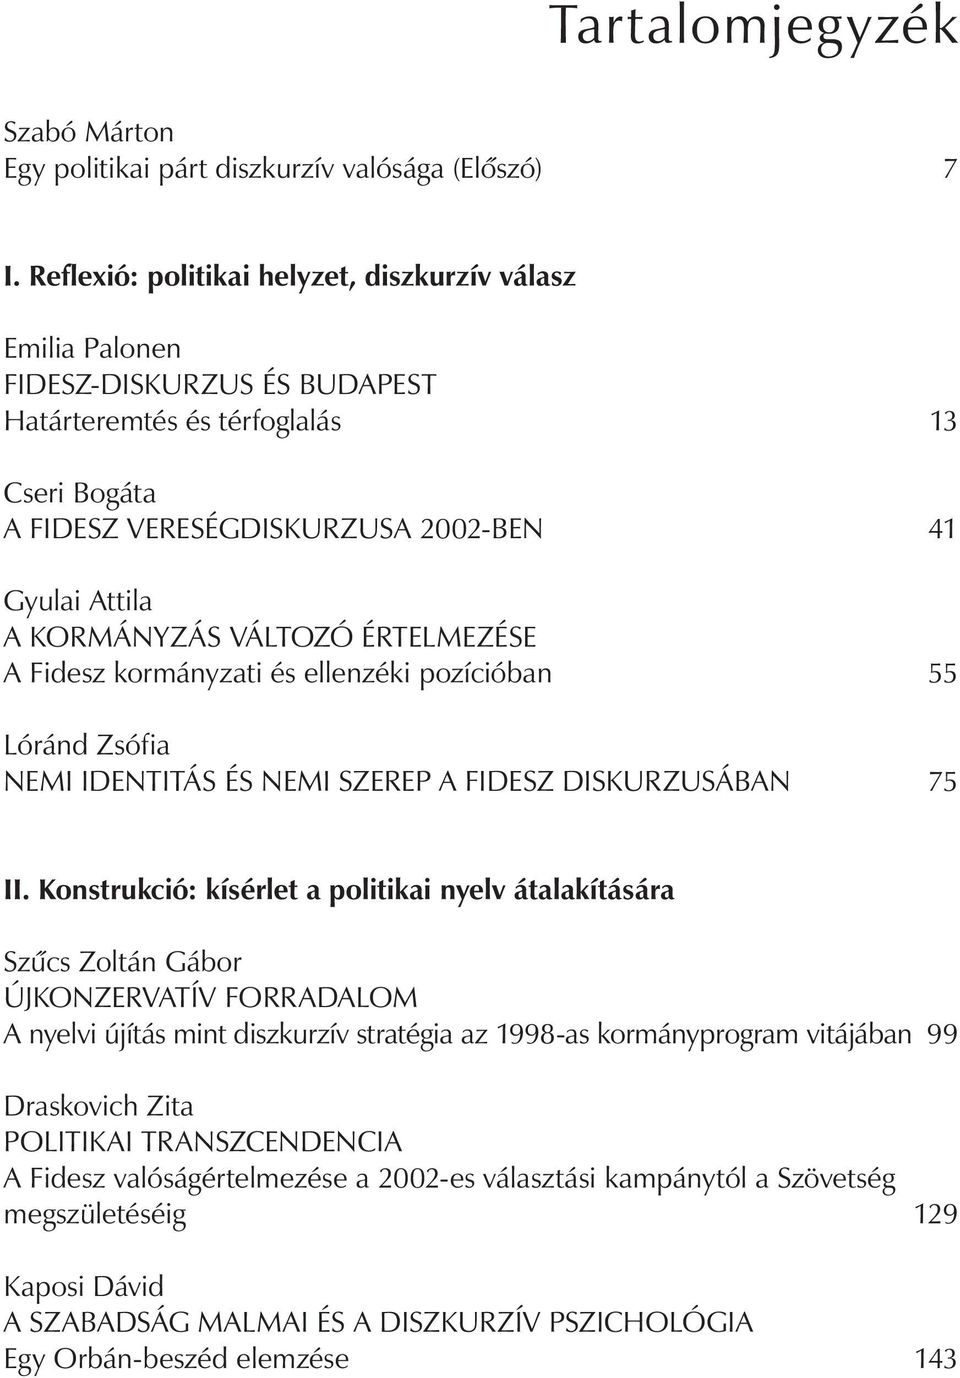 kormányzás VÁLToZÓ értelmezése A Fidesz kormányzati és ellenzéki pozícióban 55 Lóránd Zsófia nemi IDEnTITÁS és nemi SZErEP A FIDESZ DISkurZuSÁBAn 75 II.